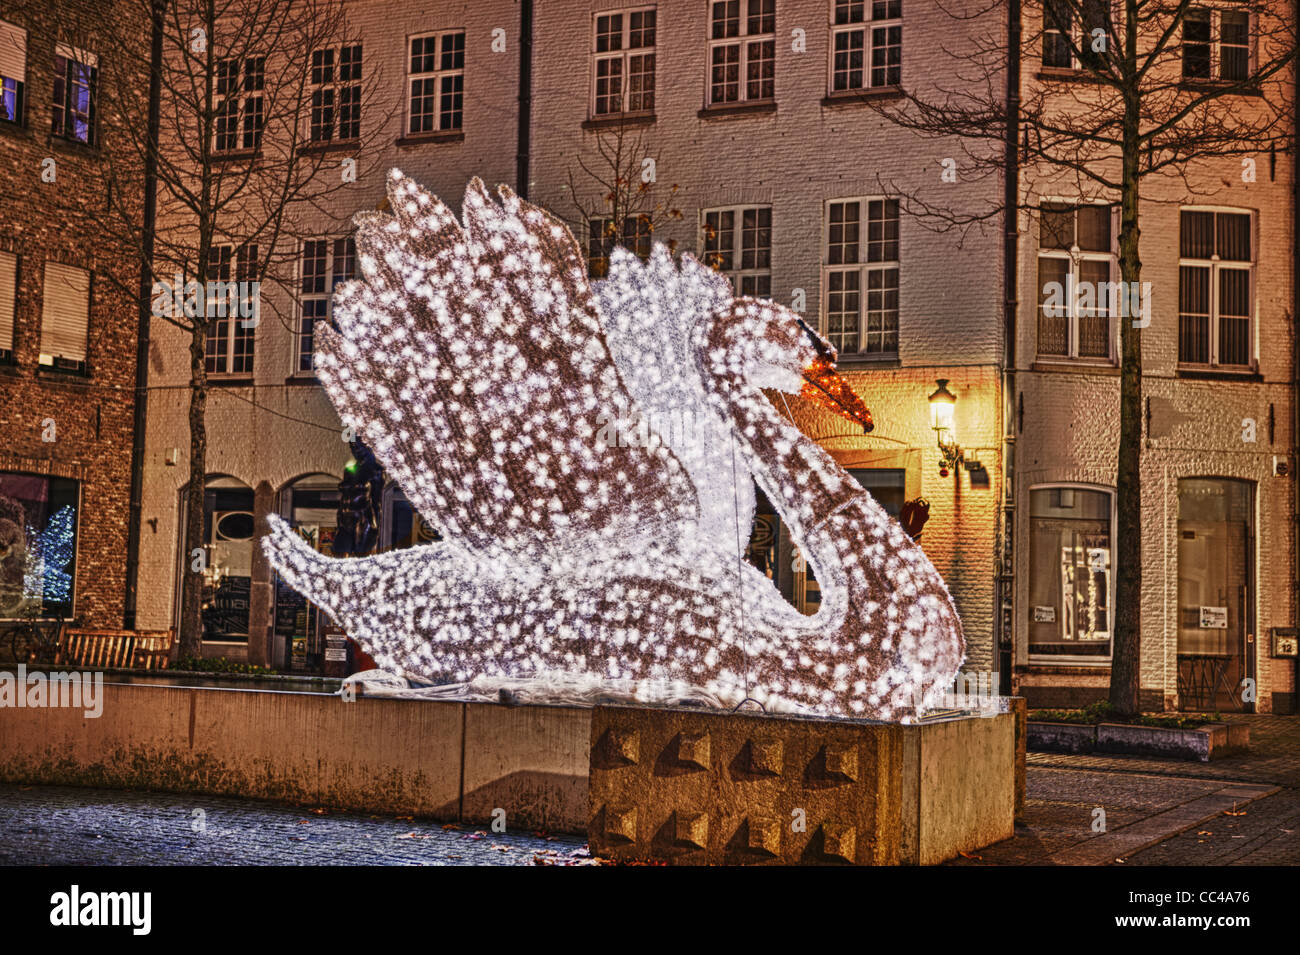 Une statue d'un cygne faite avec des feux ayant une apparence de cristal. La photo prise à Bruges au cours de la période de Noël. Banque D'Images